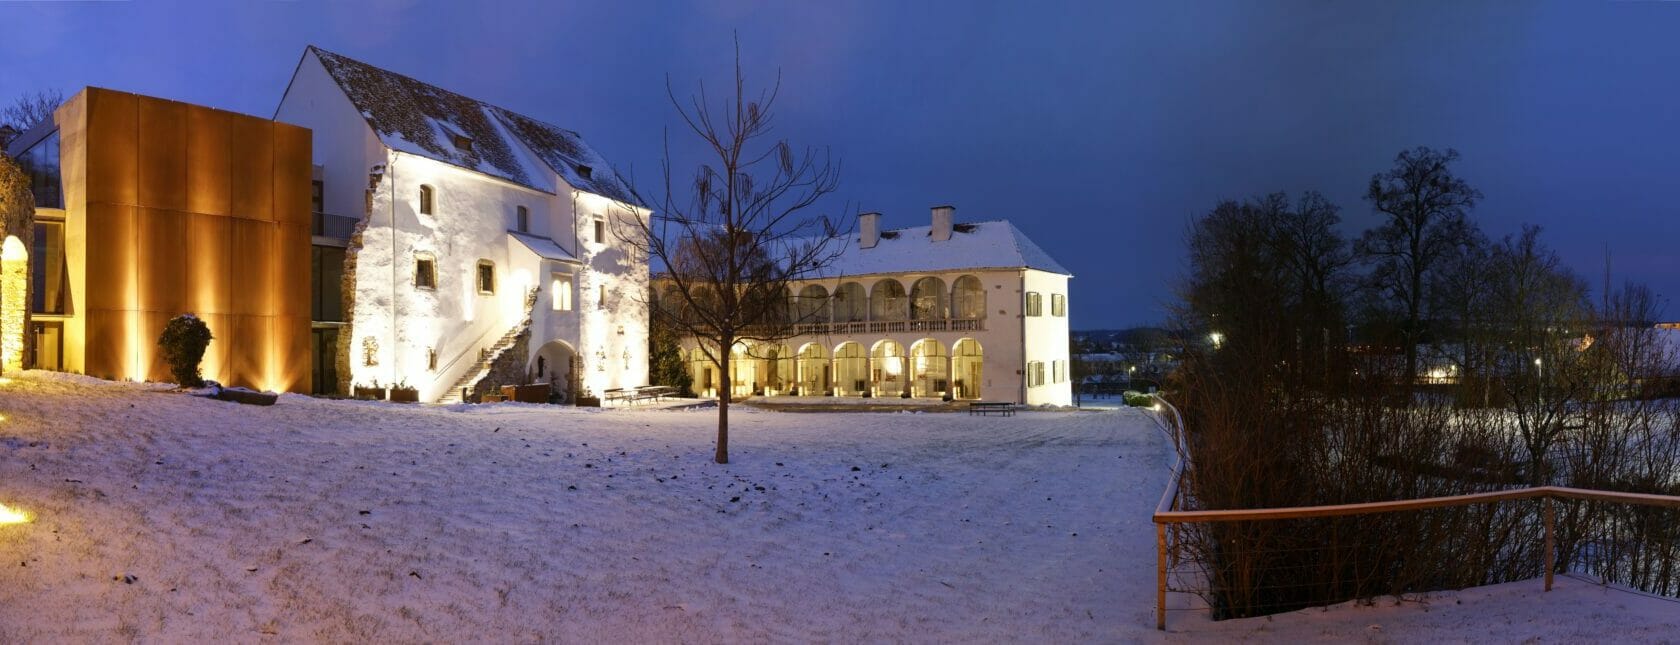 Schloss Hartberg am Abend im Winter